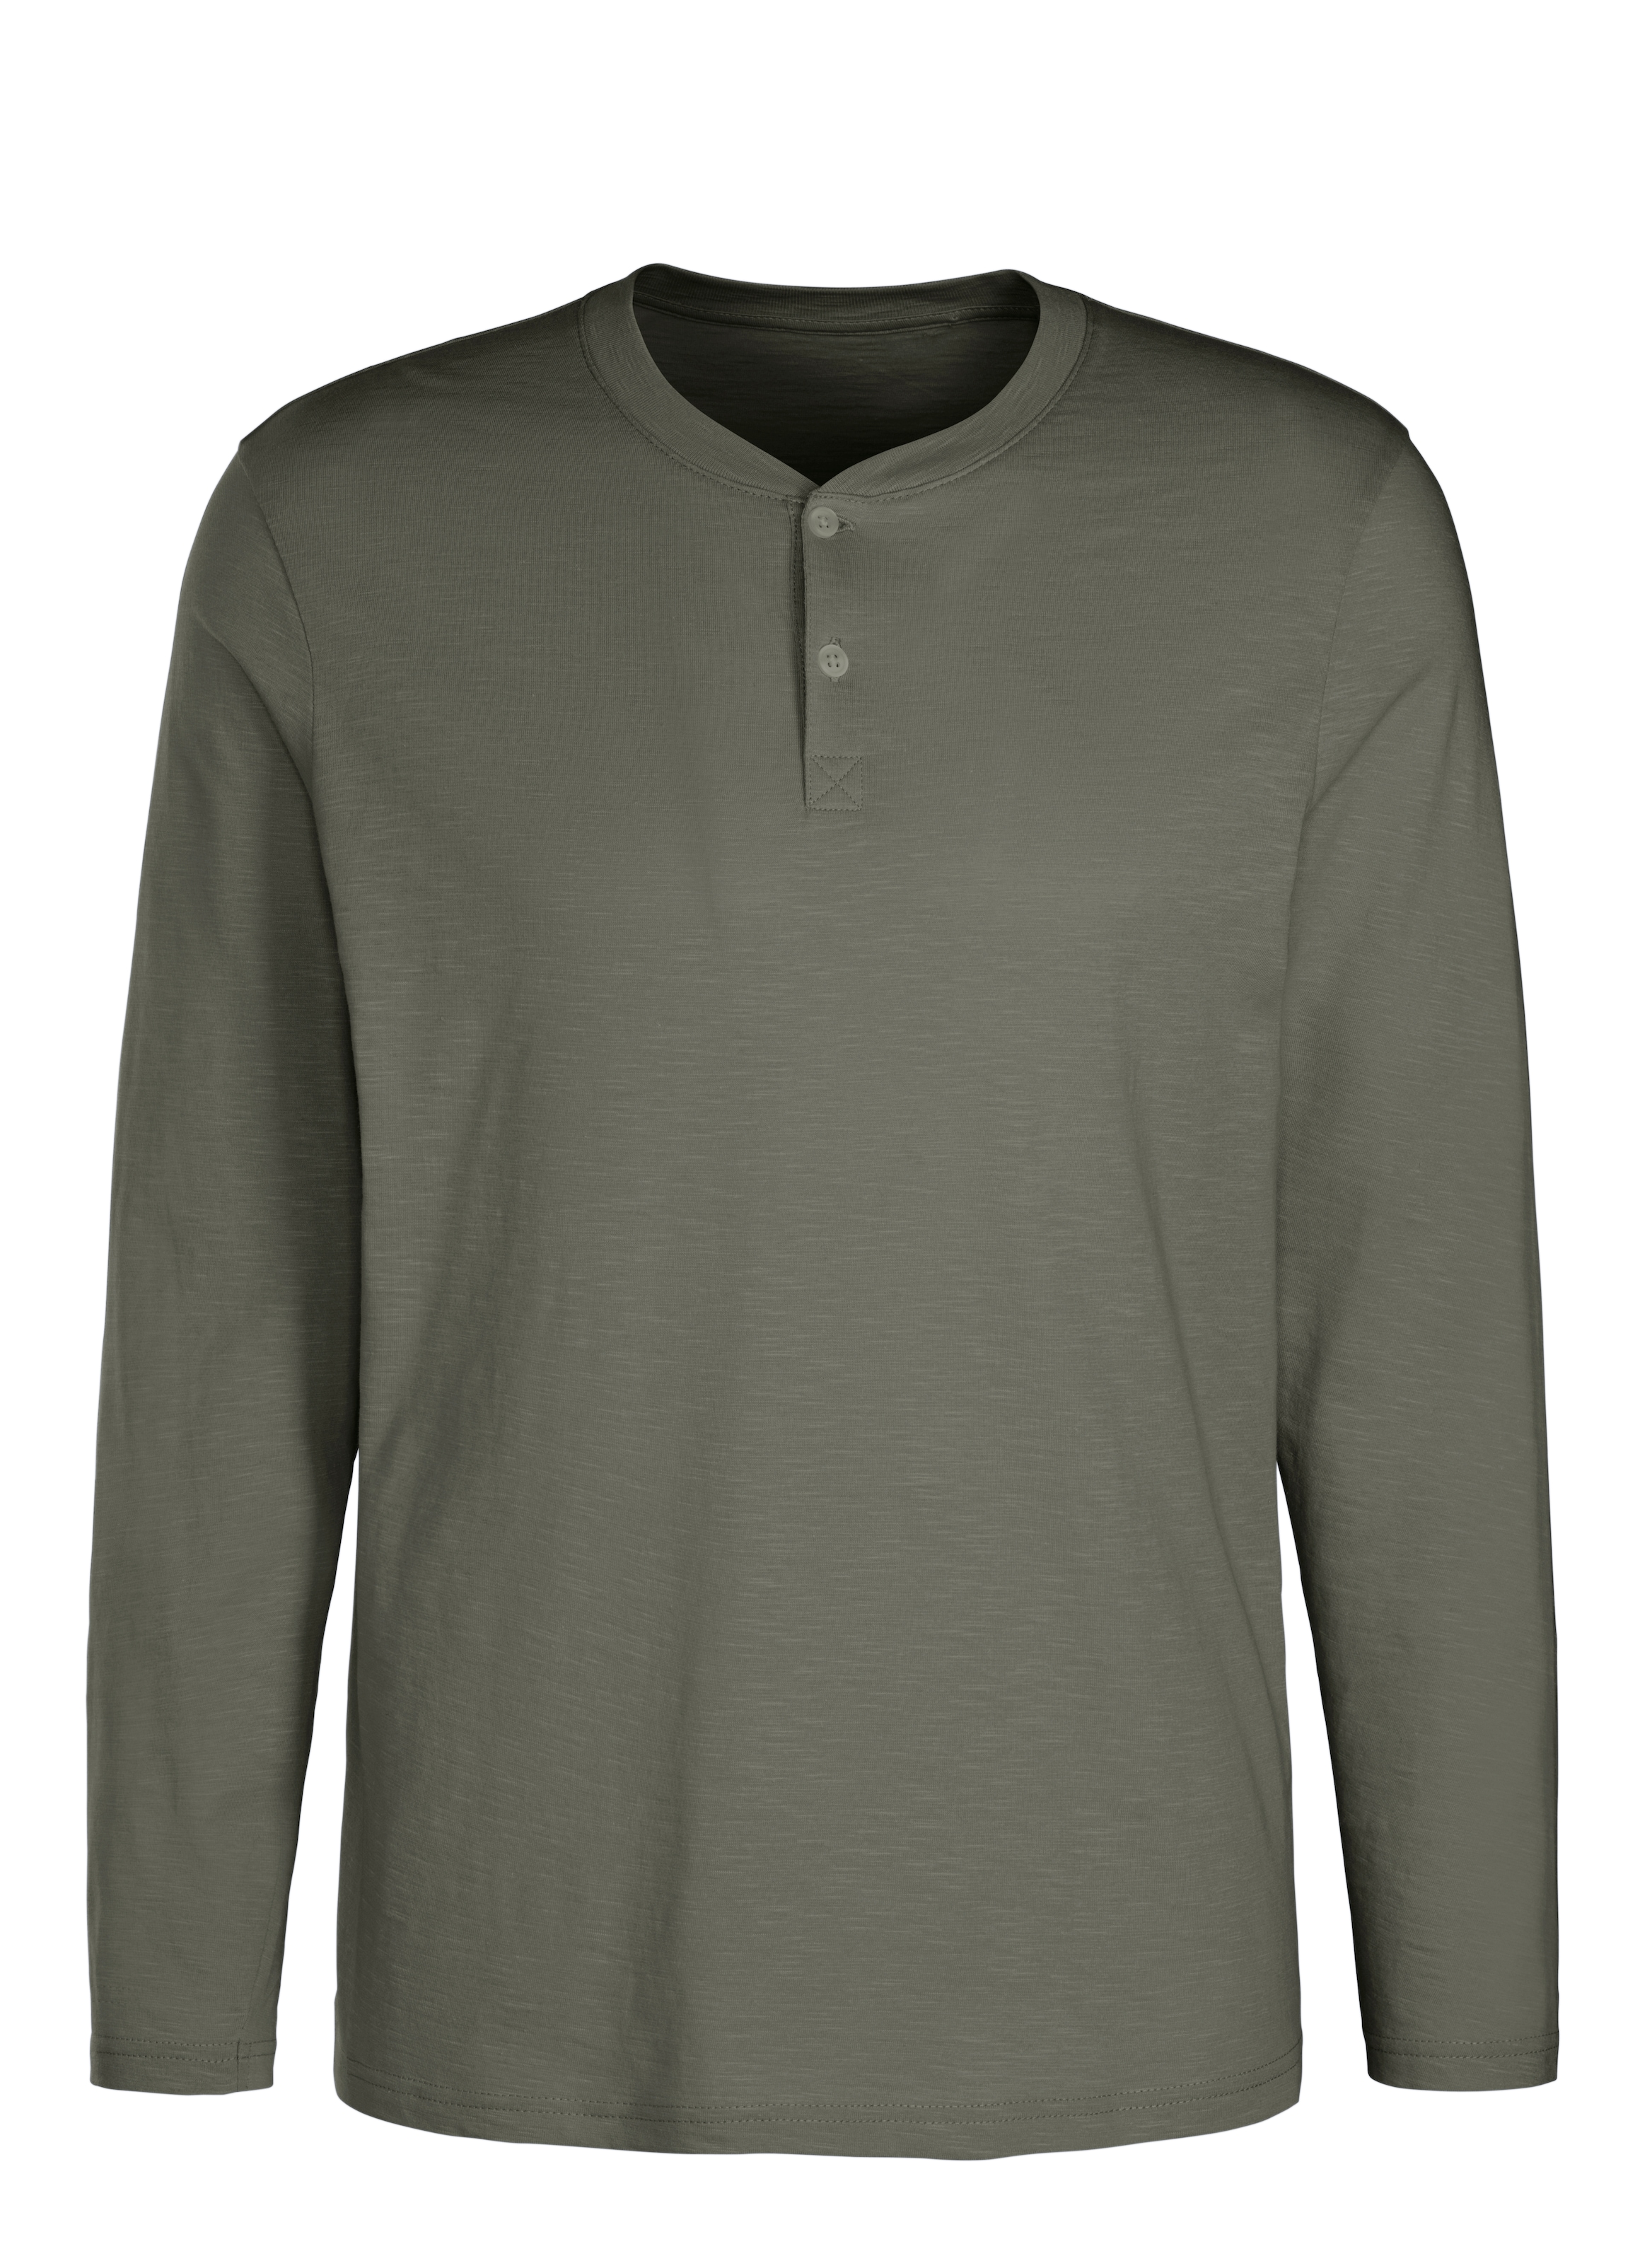 H.I.S Langarmshirt, Shirt mit Knopfleiste aus aus strukturierter Baumwoll-Qualität